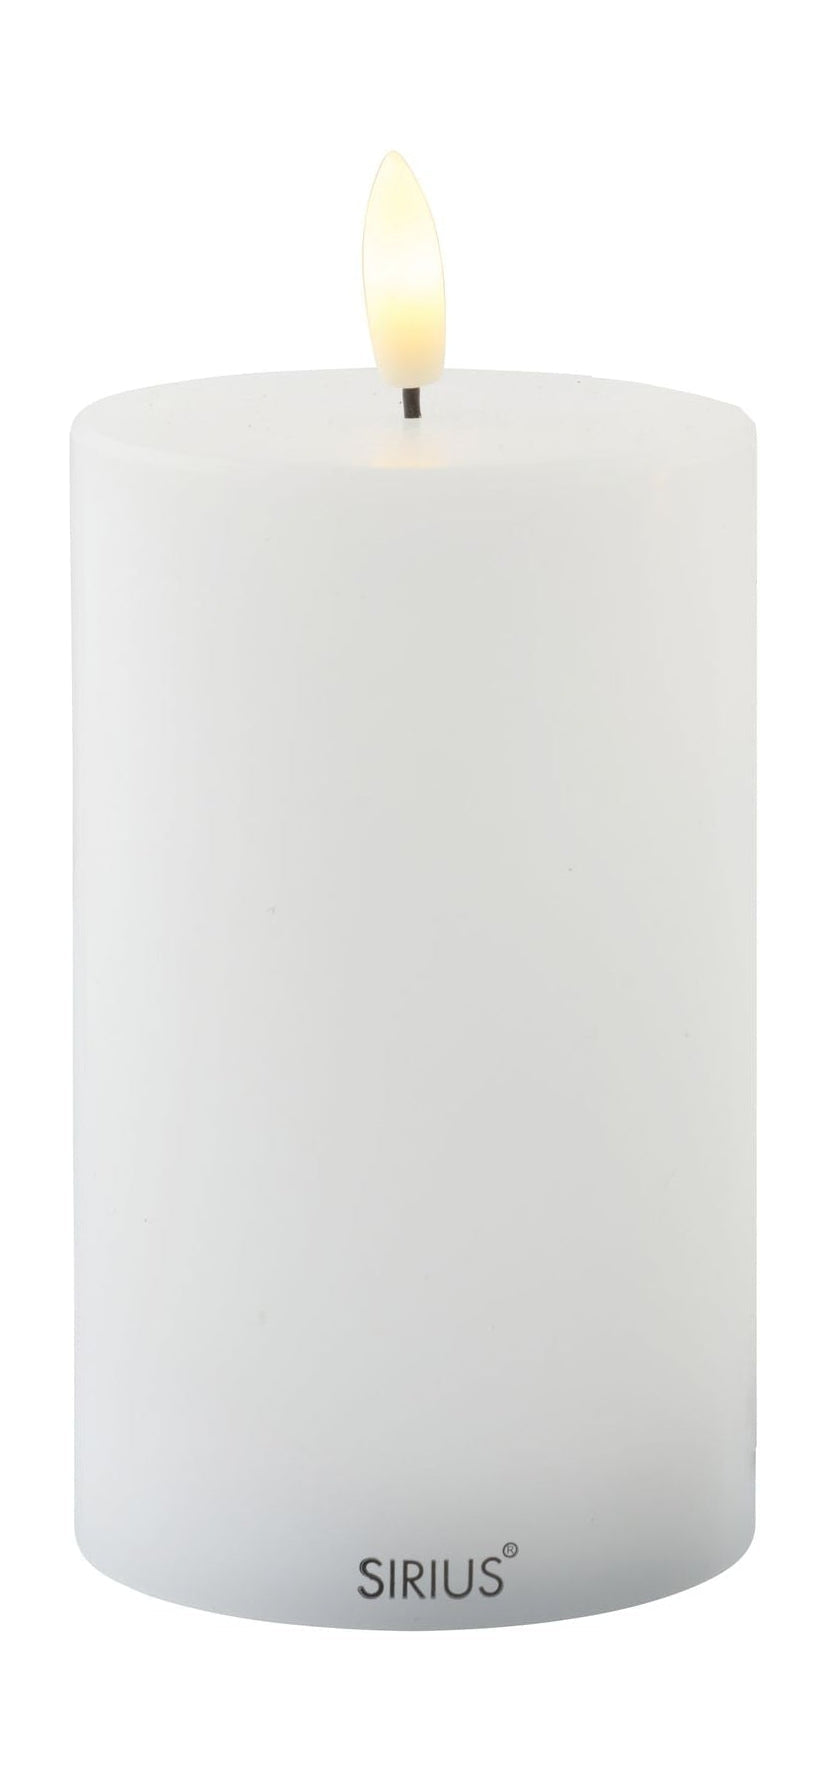 SIRIUS Sille en plein air LED White, Ø7,5x H12,5 cm